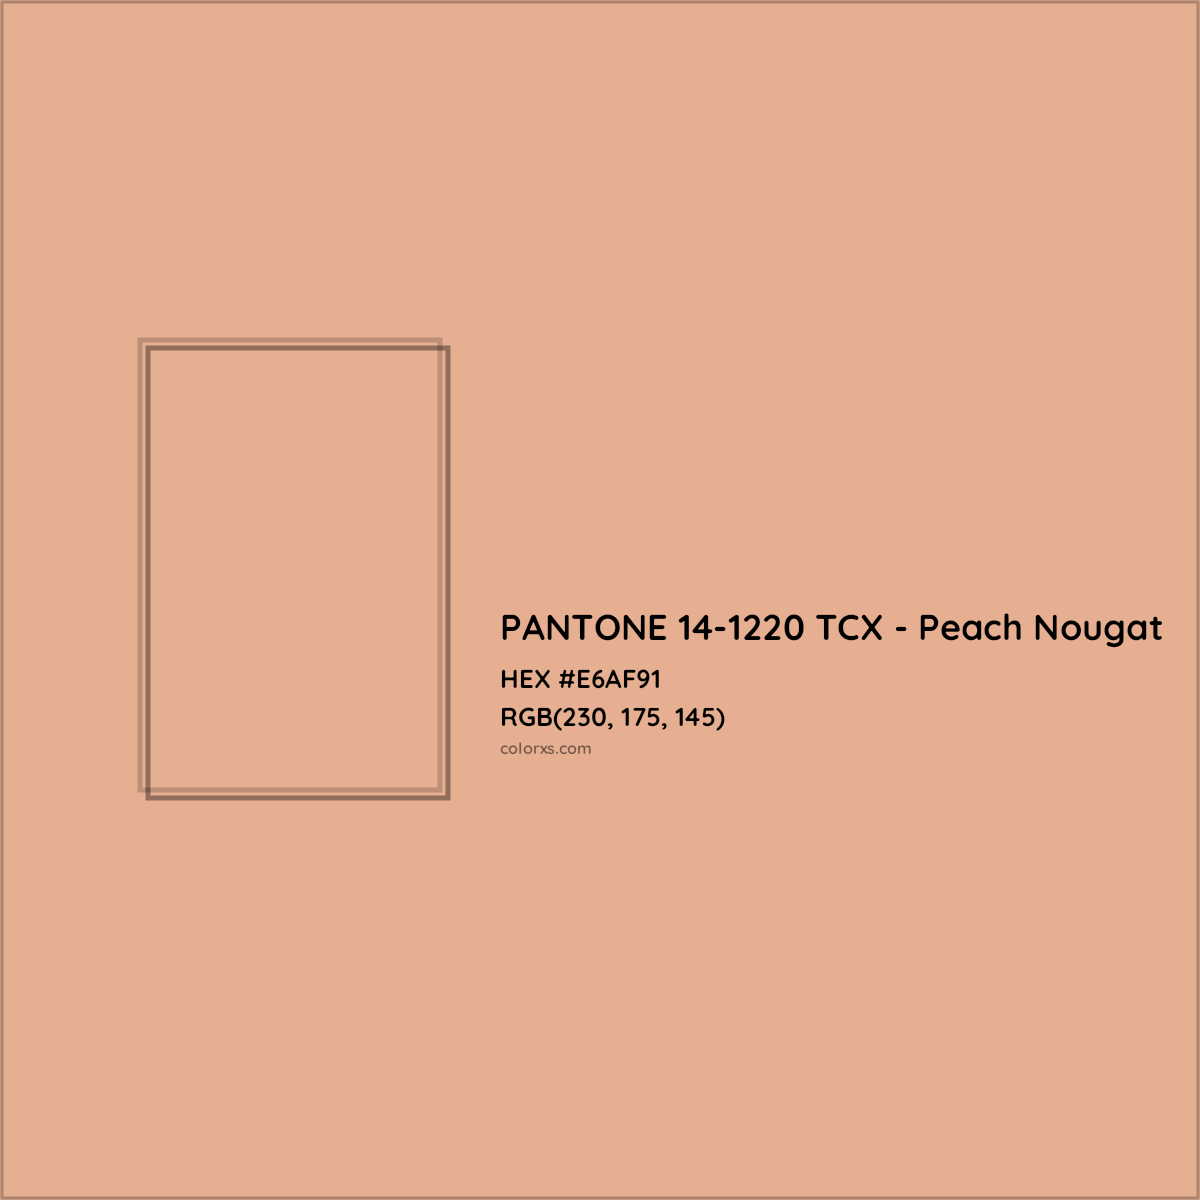 HEX #E6AF91 PANTONE 14-1220 TCX - Peach Nougat CMS Pantone TCX - Color Code